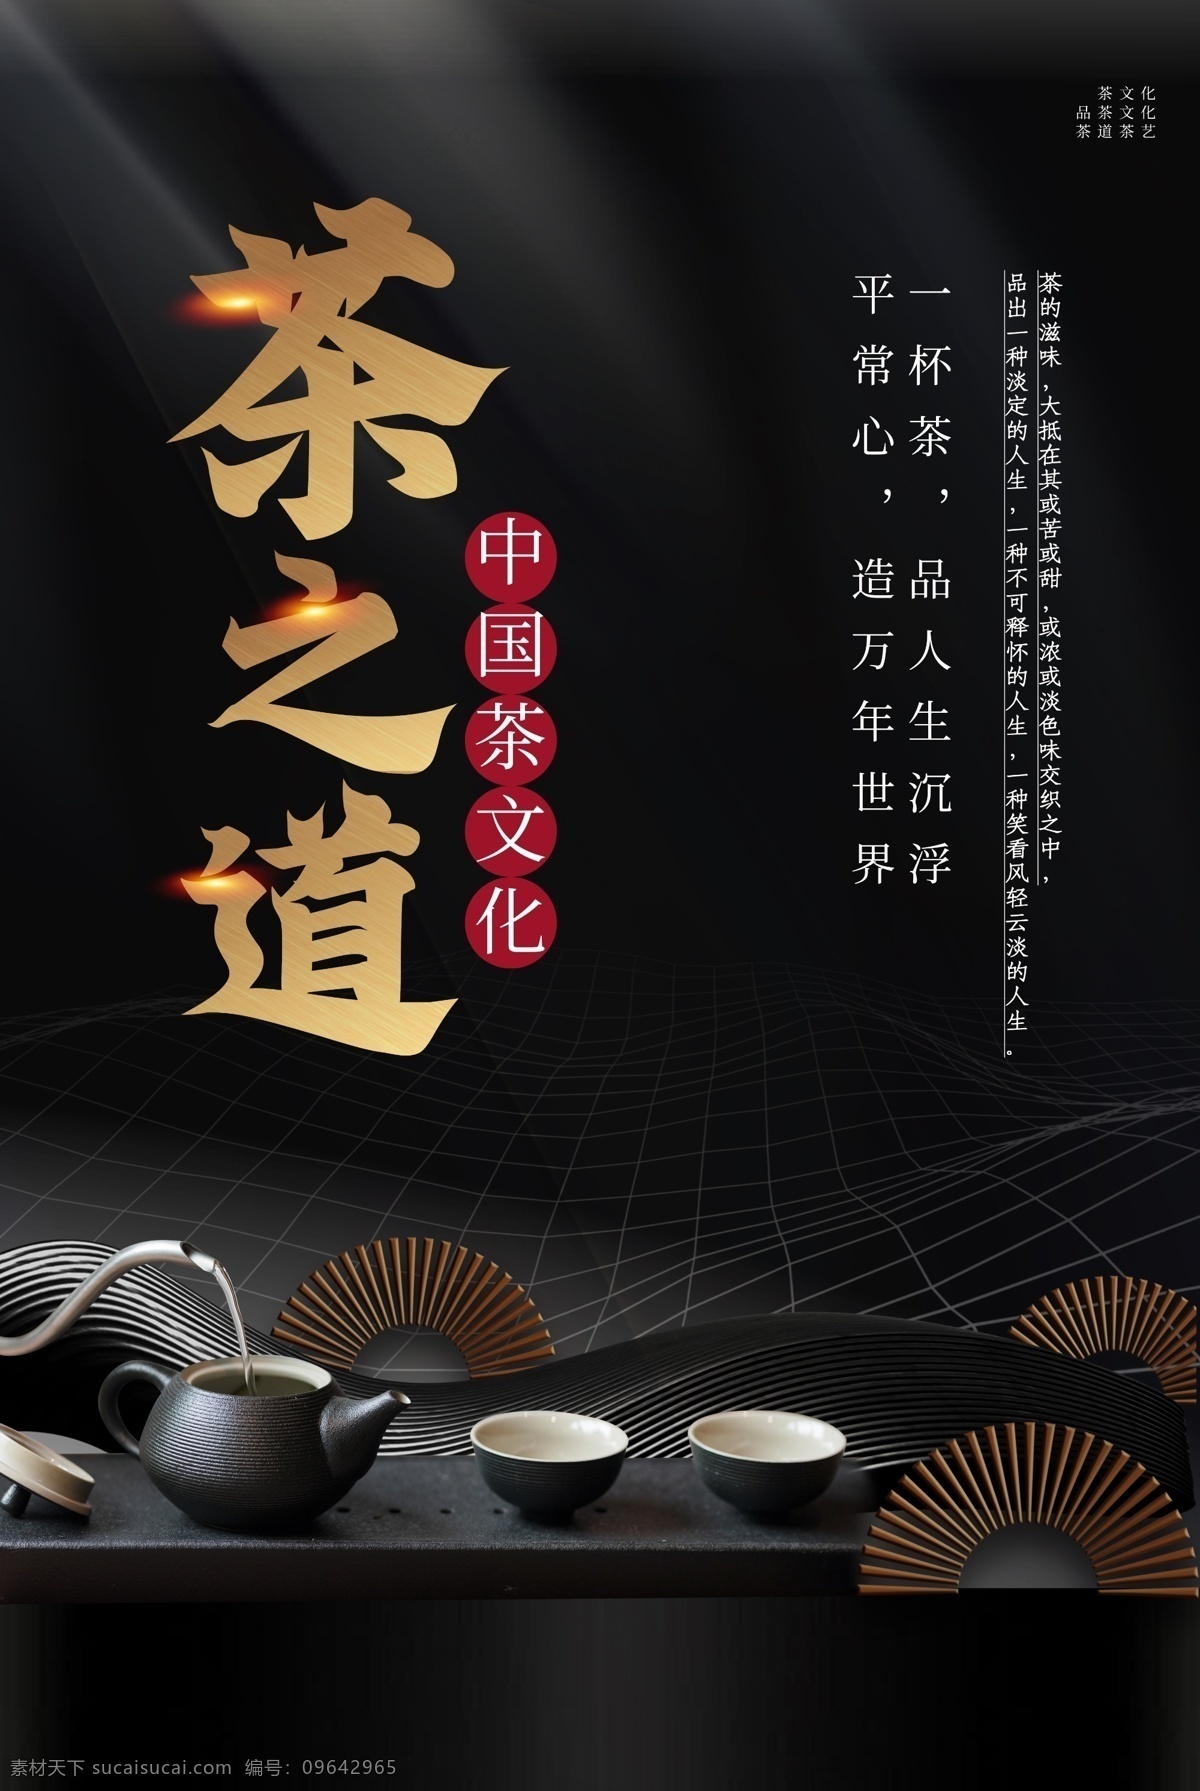 茶道 茶叶 茶具 活动 背景 素材图片 海报